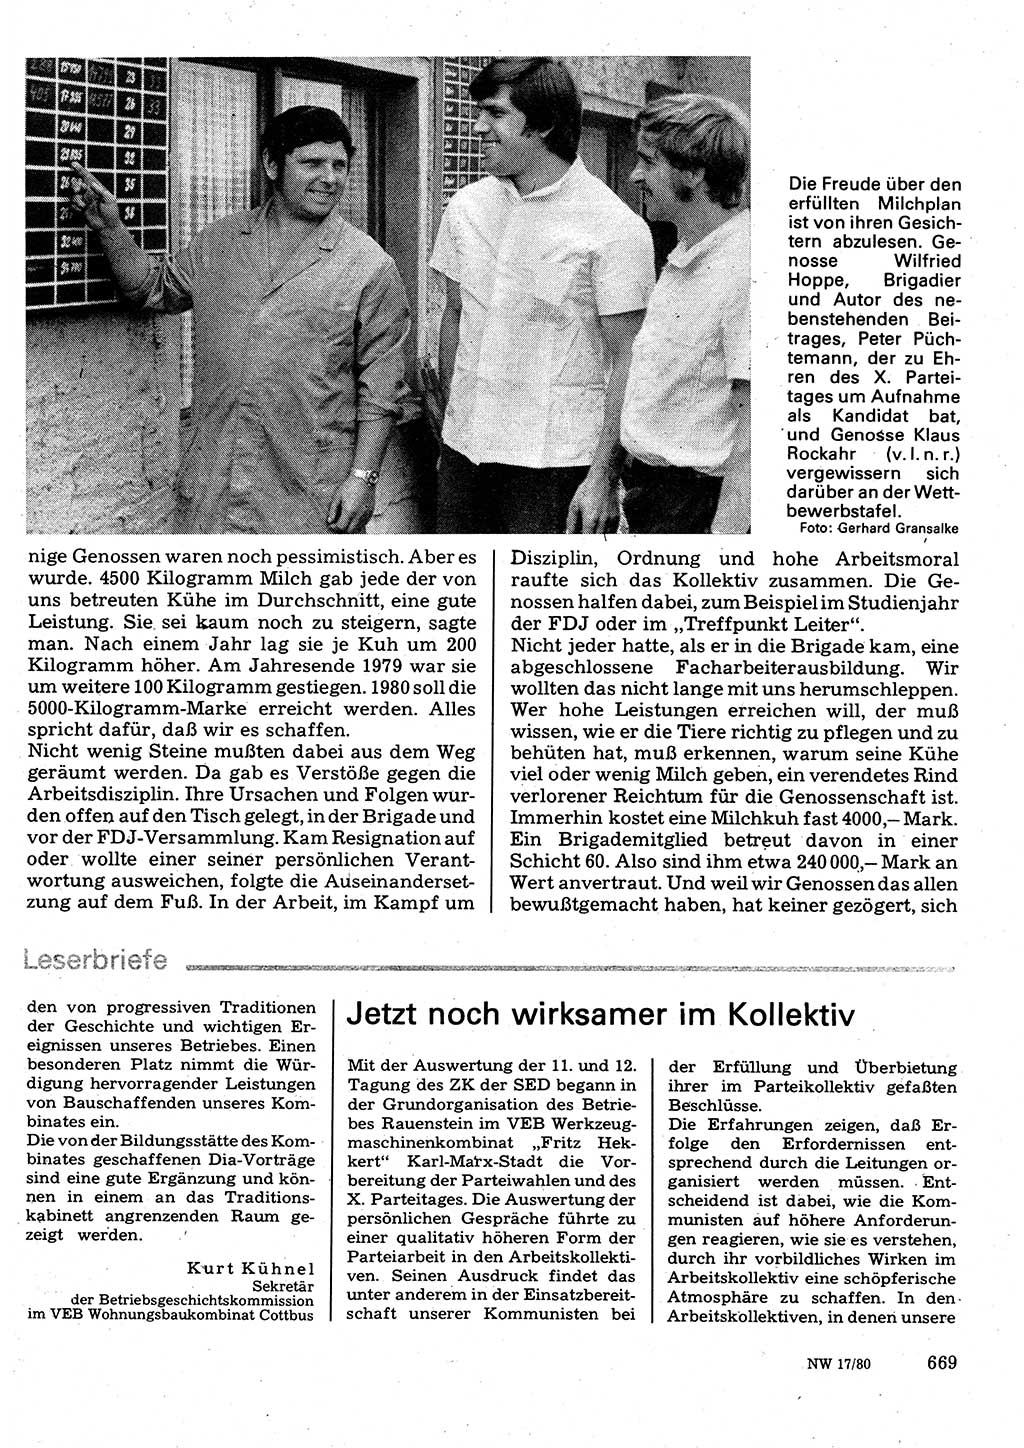 Neuer Weg (NW), Organ des Zentralkomitees (ZK) der SED (Sozialistische Einheitspartei Deutschlands) für Fragen des Parteilebens, 35. Jahrgang [Deutsche Demokratische Republik (DDR)] 1980, Seite 669 (NW ZK SED DDR 1980, S. 669)